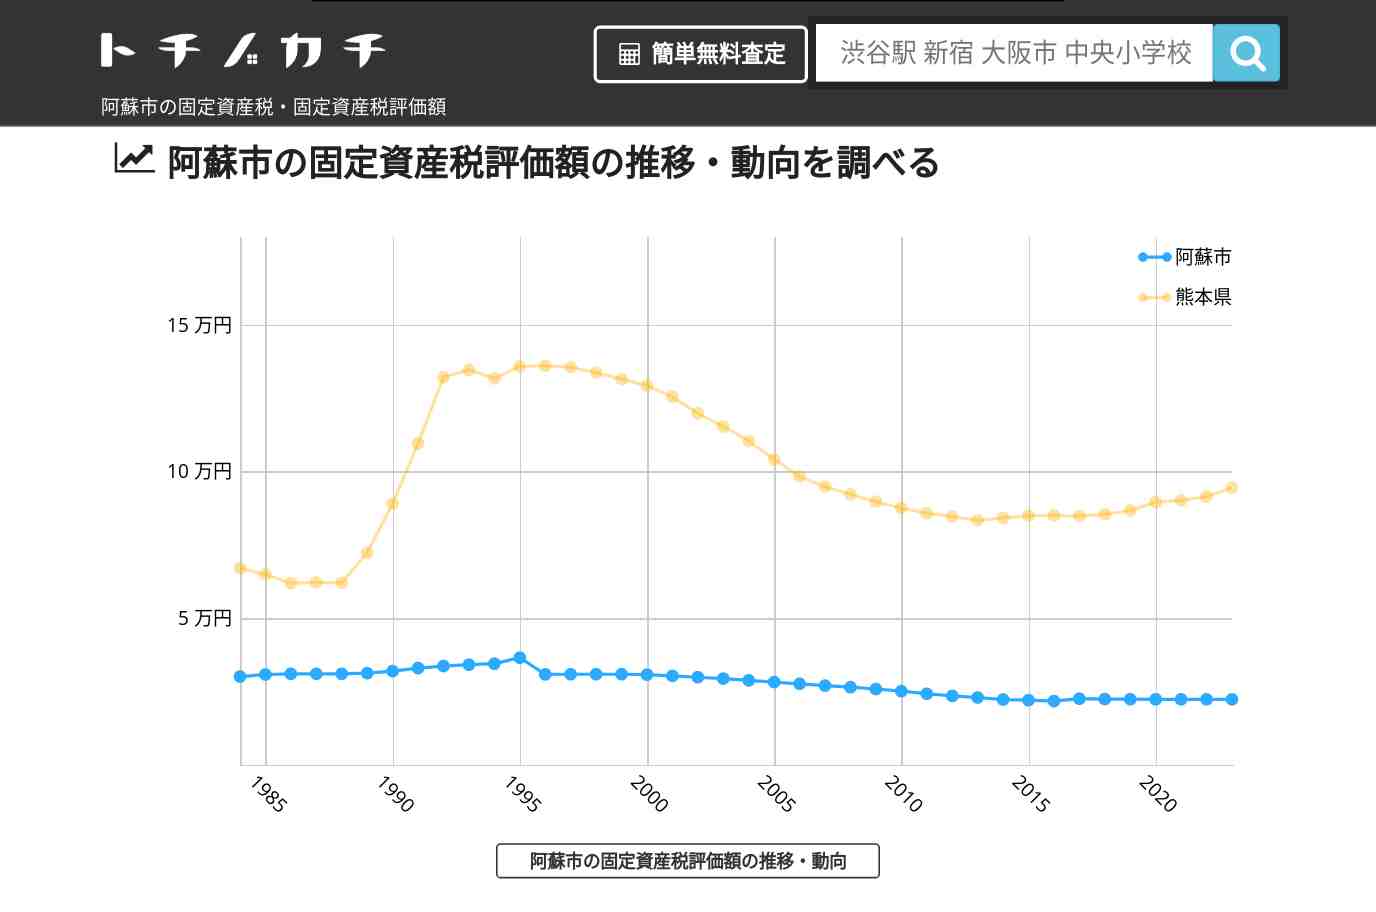 阿蘇中学校(熊本県 阿蘇市)周辺の固定資産税・固定資産税評価額 | トチノカチ